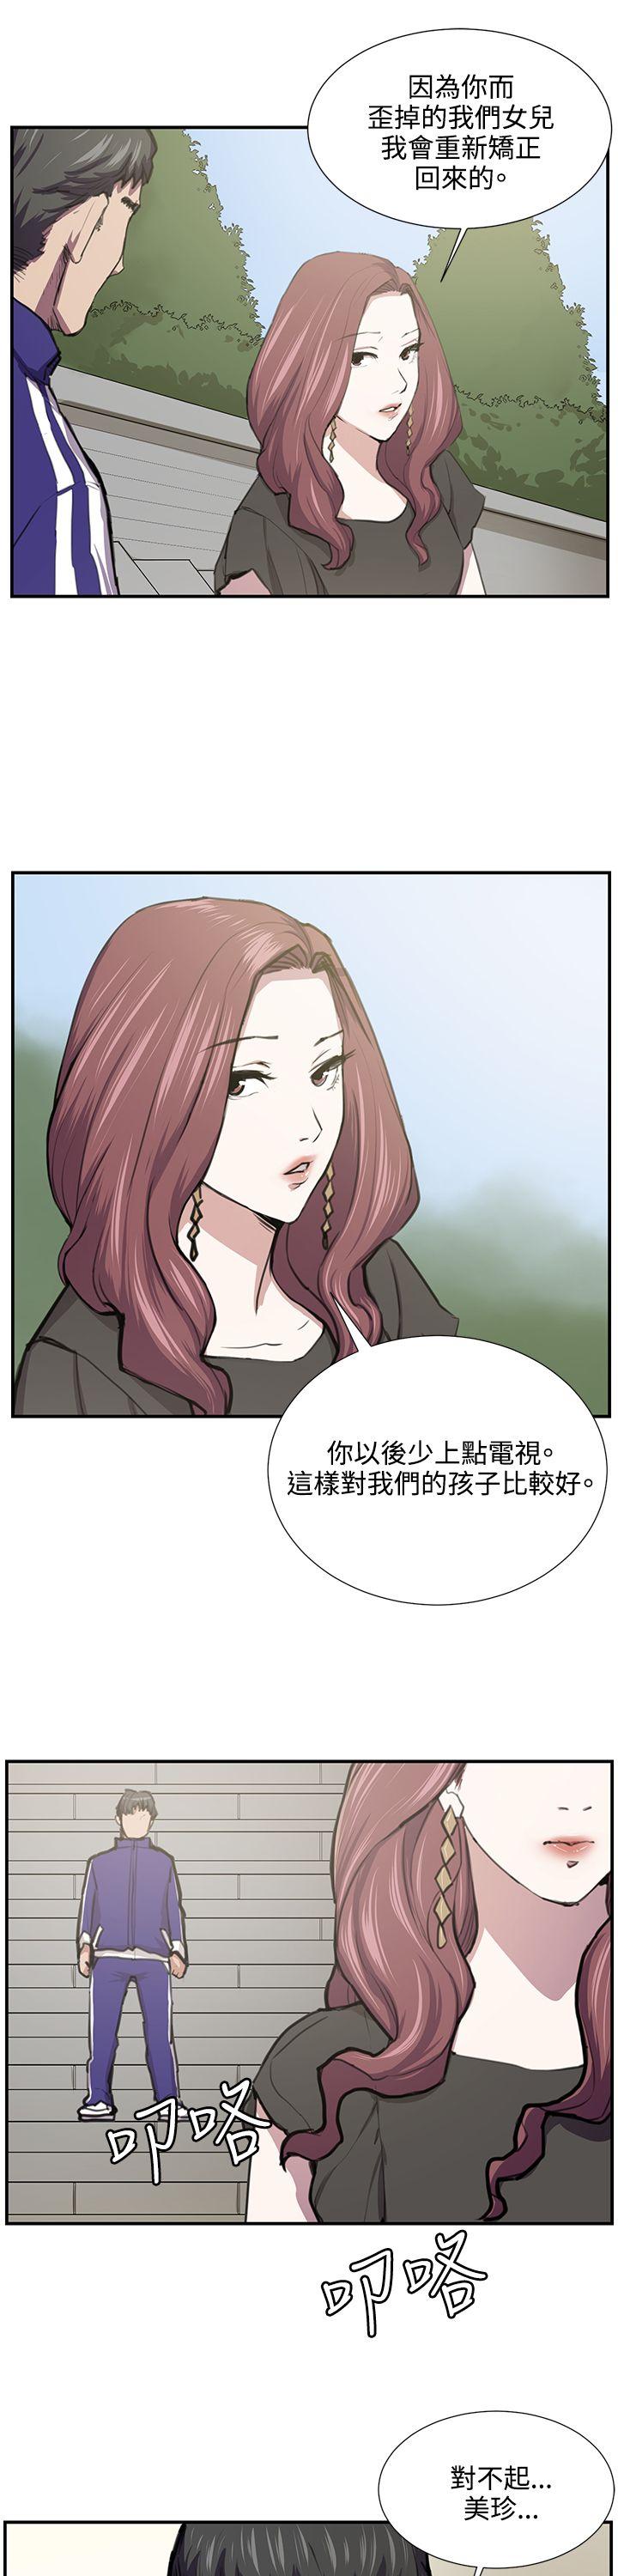 韩国污漫画 深夜便利店 第52话 22